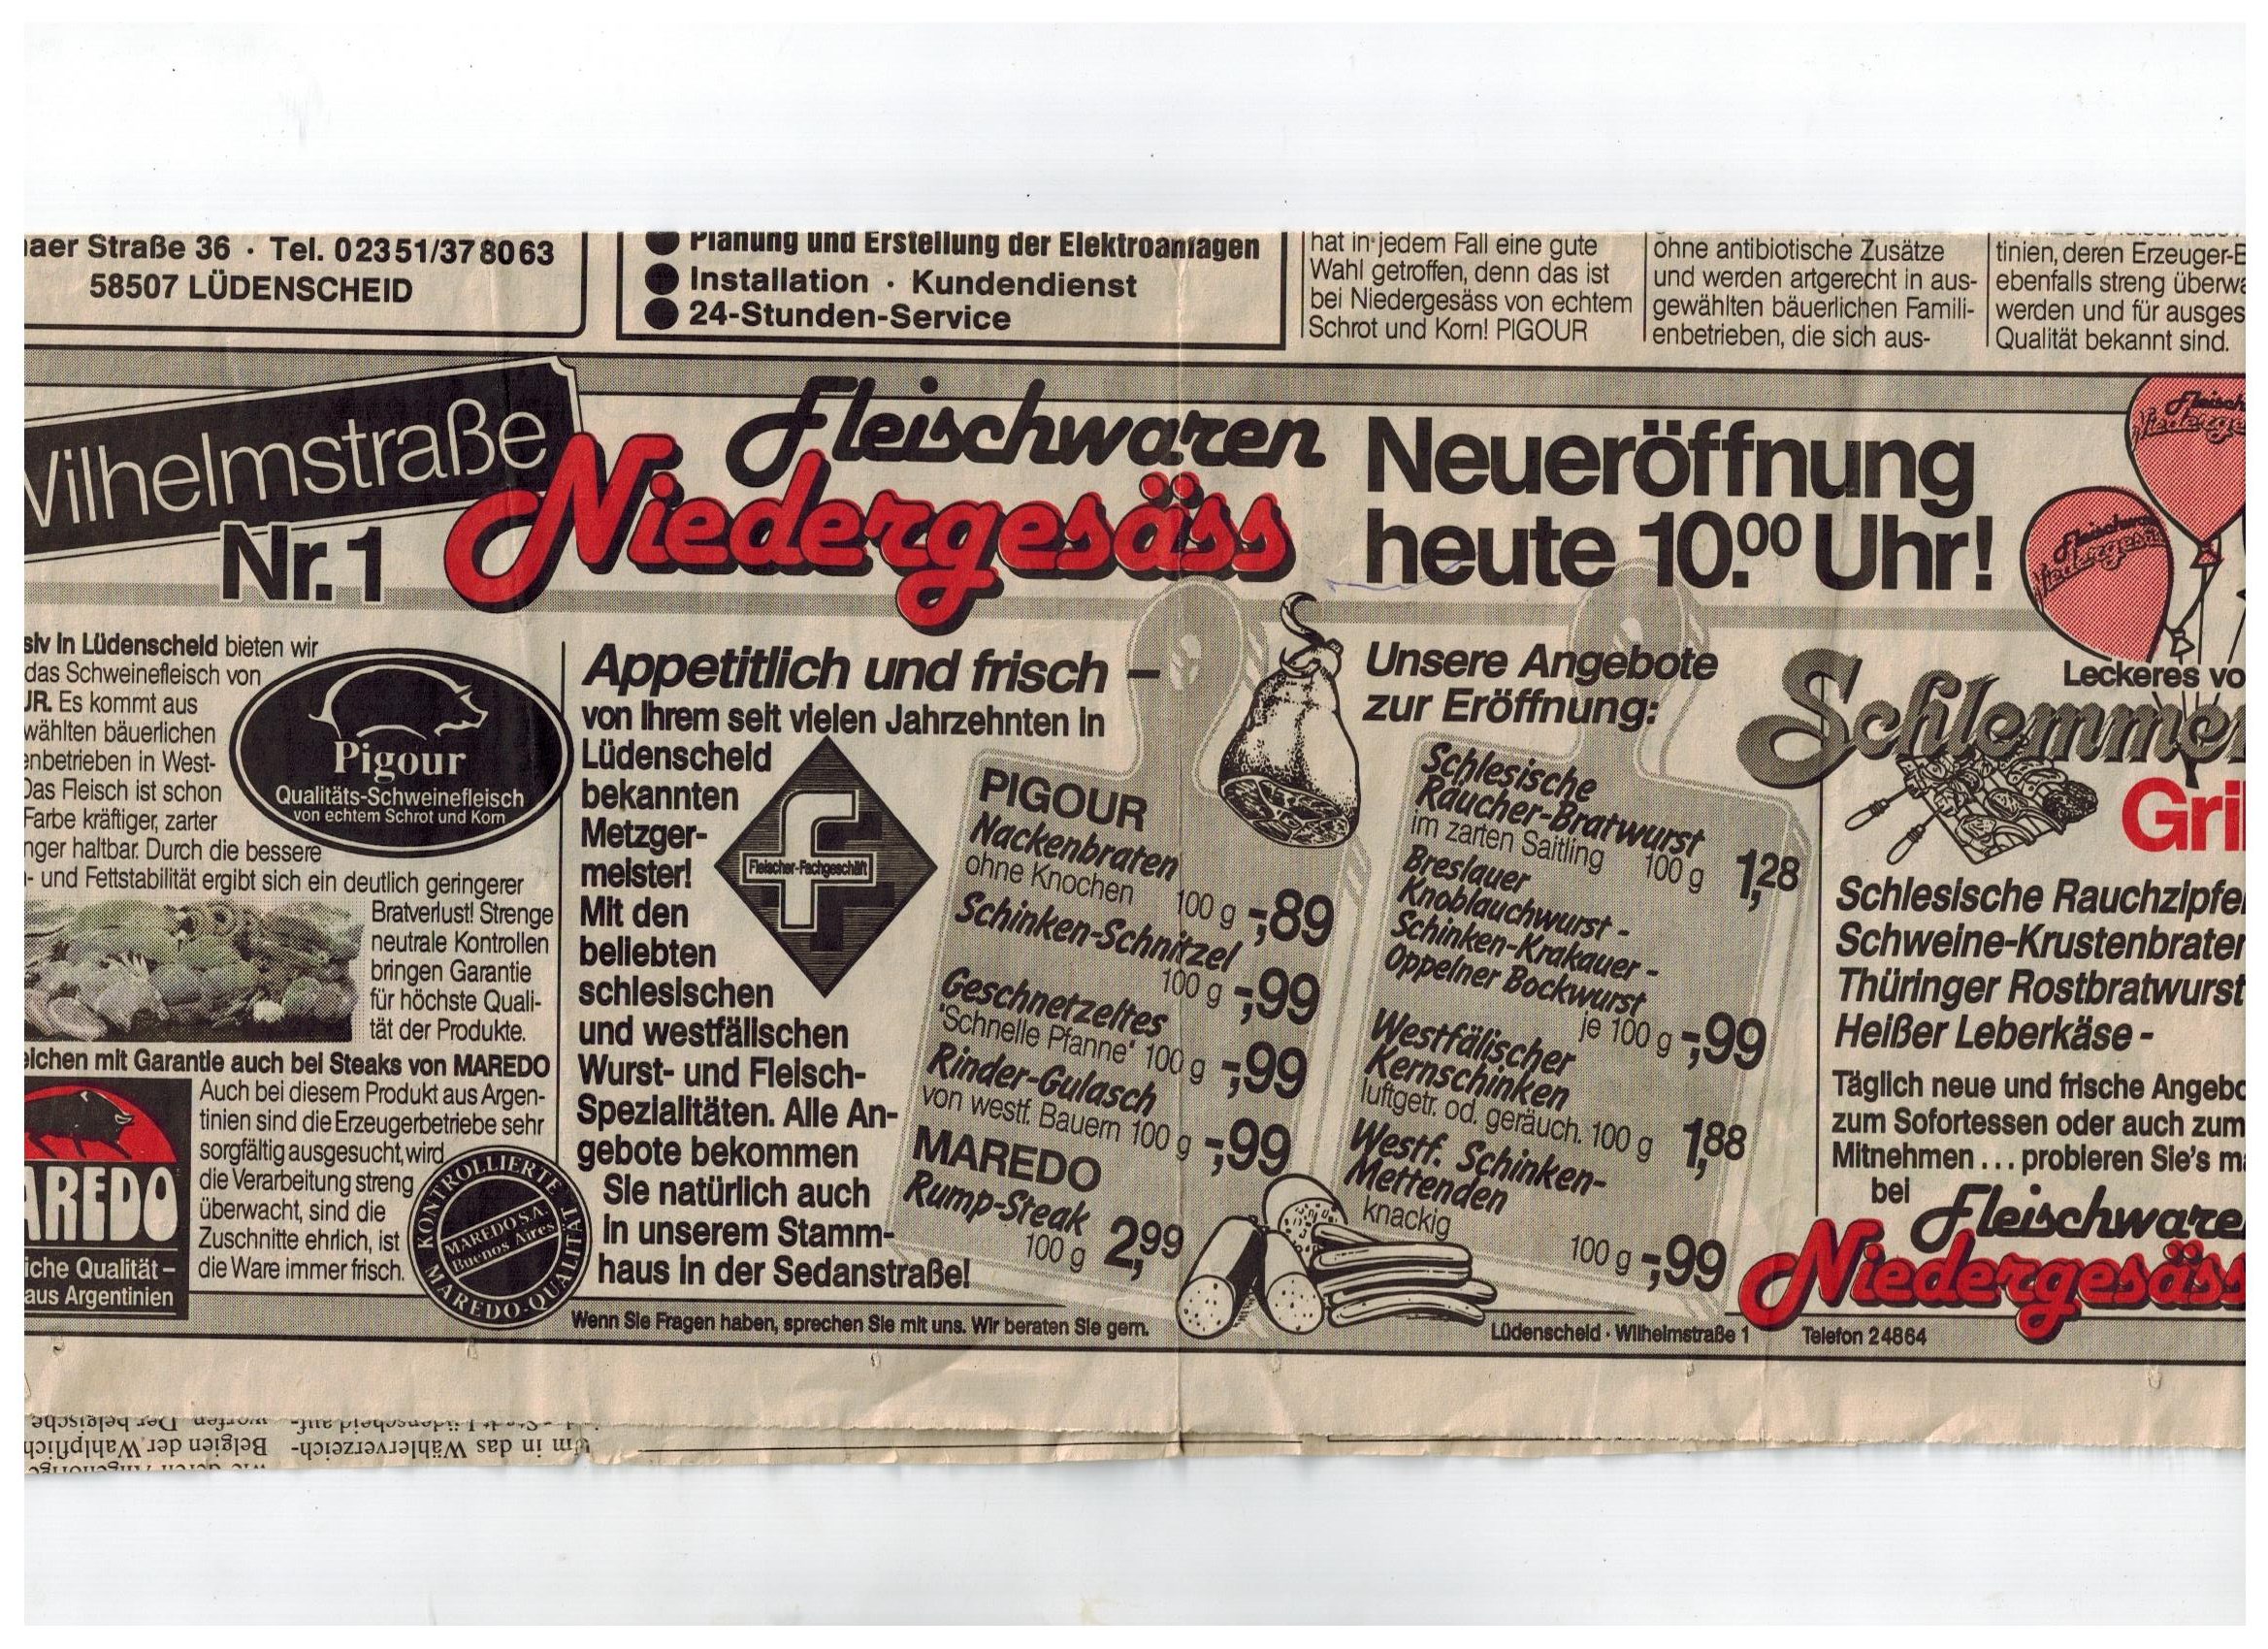 Zeitungsartikel Metzgerei Niedergesäss Lüdenscheid